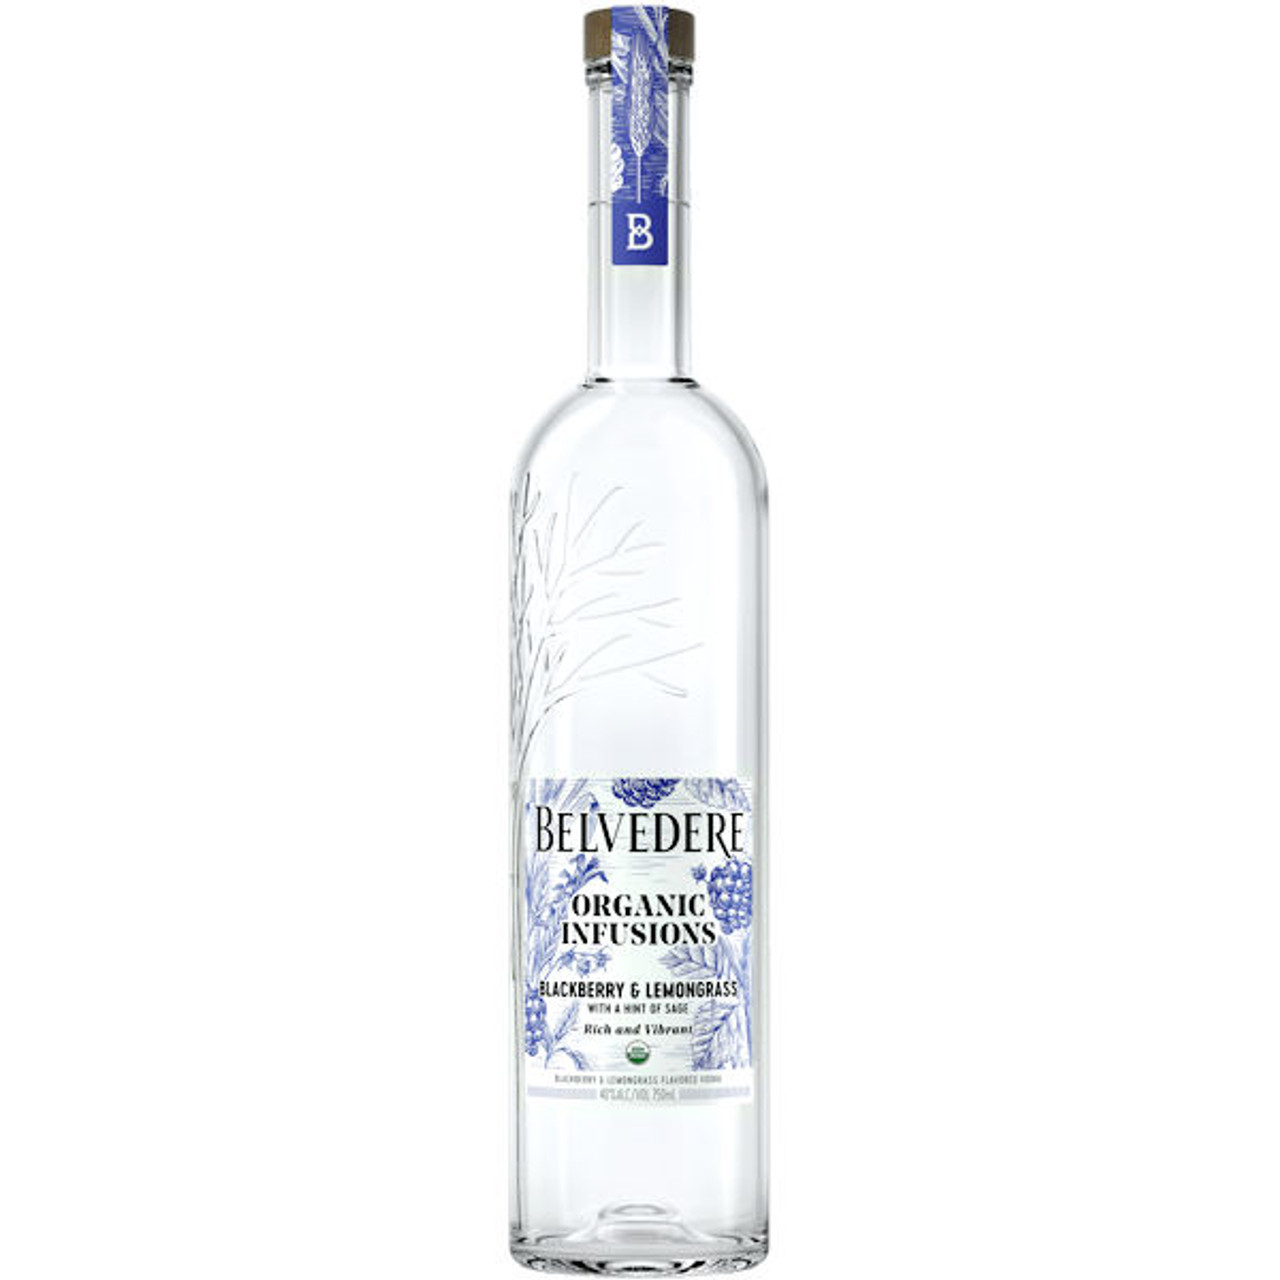 Buy Belvedere Vodka Online